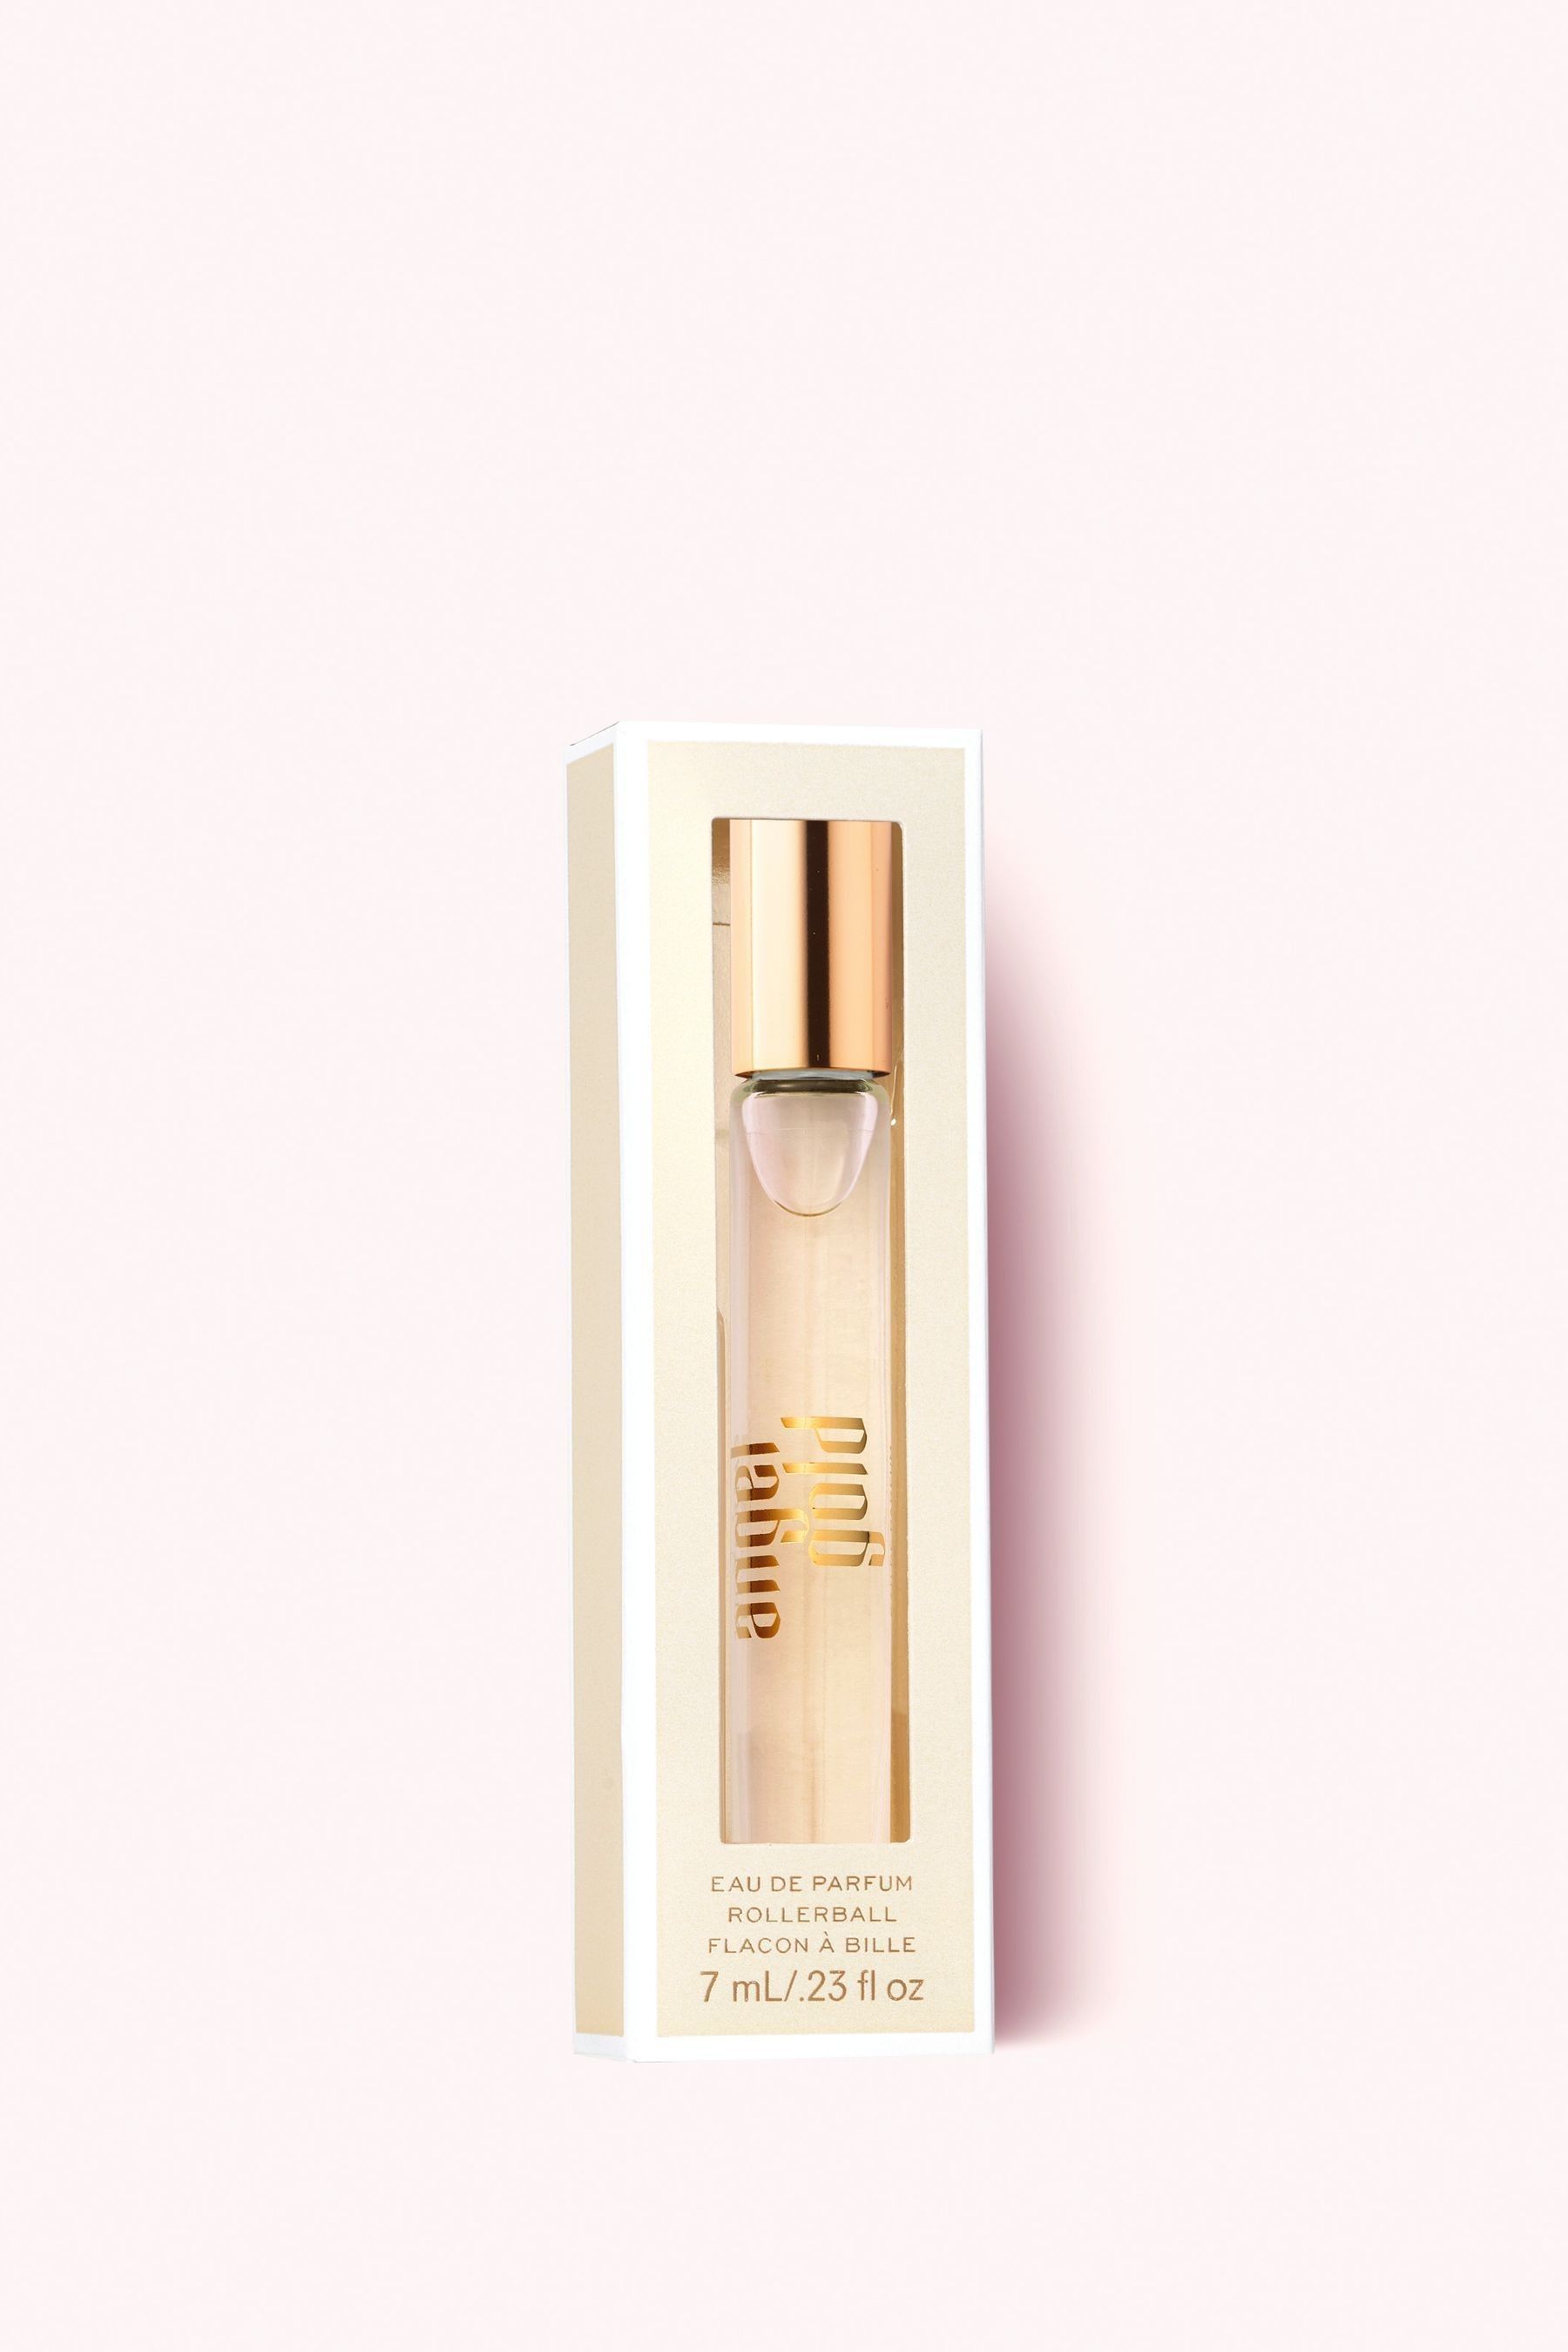 Buy Victoria's Secret Eau de Parfum 100ml from the Victoria's Secret UK ...